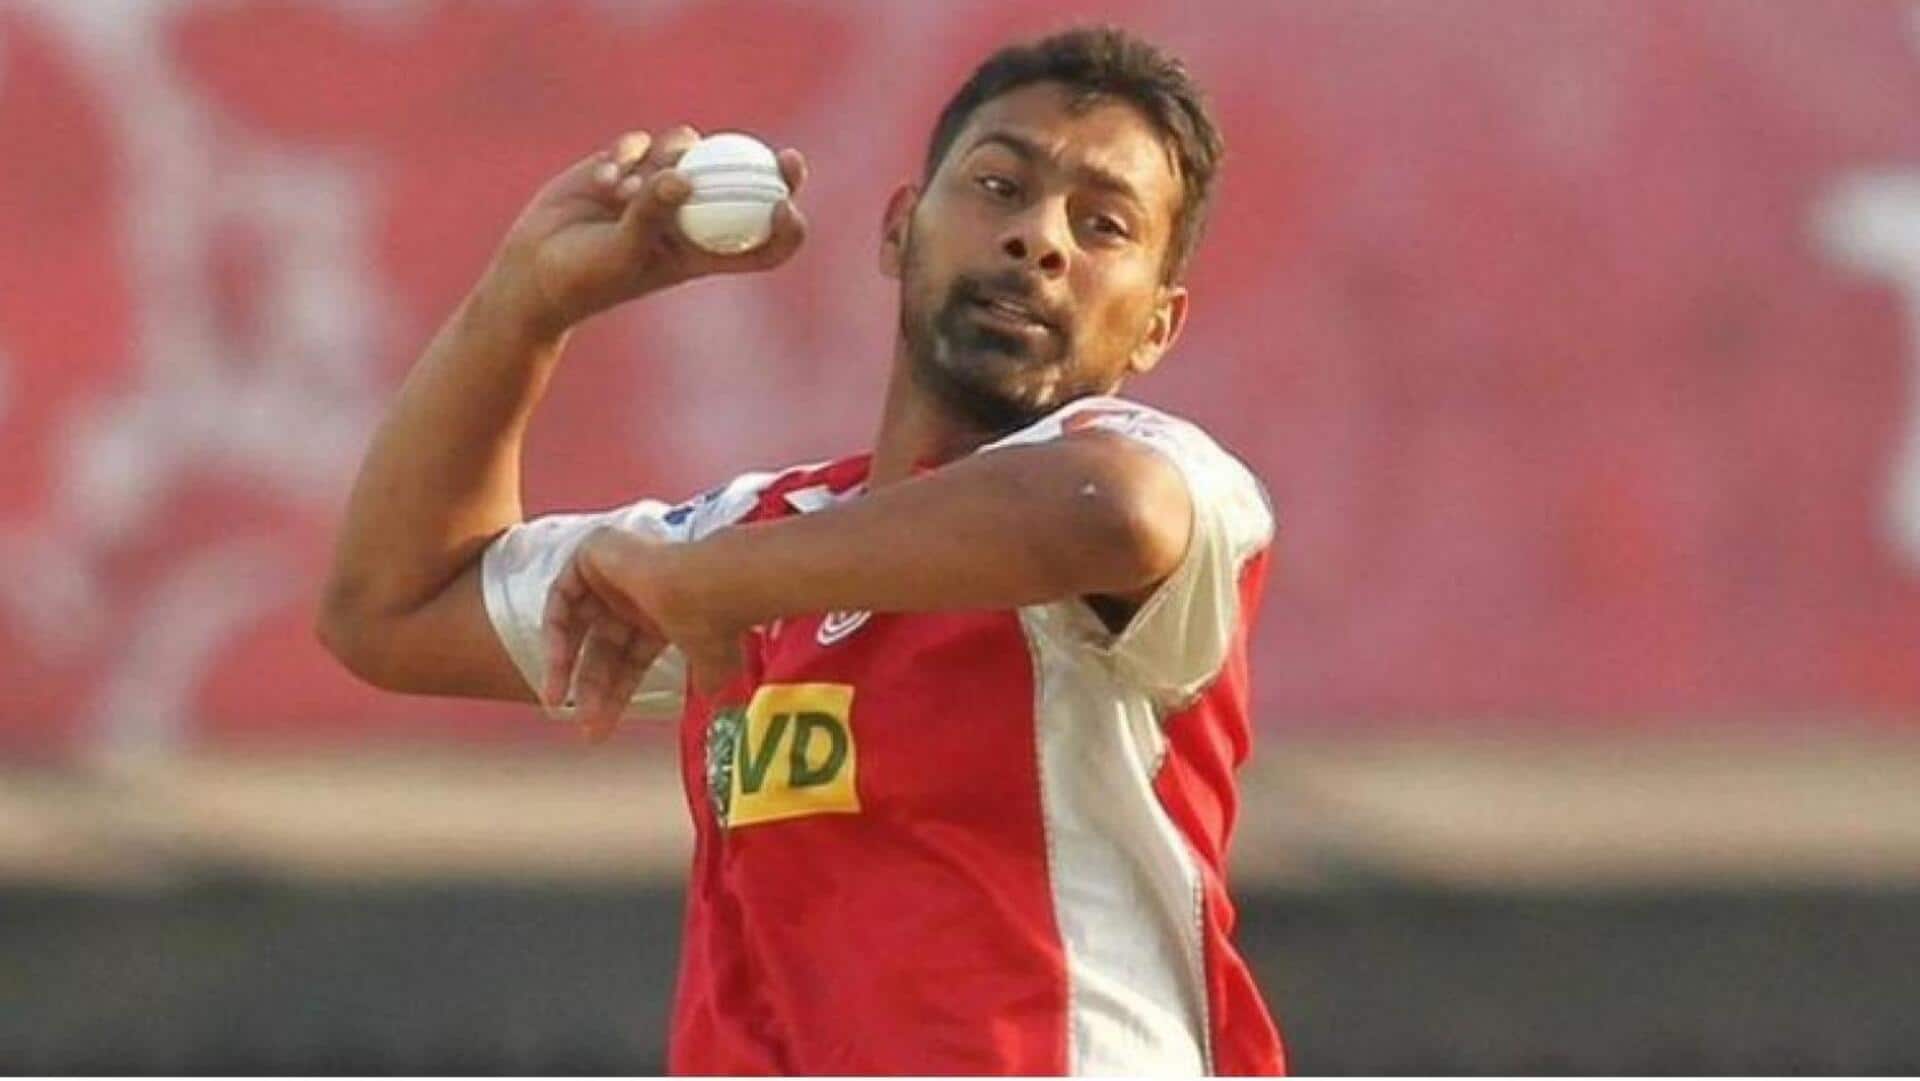 प्रवीण कुमार ने फेंके हैं IPL में सर्वाधिक मेडन ओवर, जानिए अन्य खिलाड़ियों के आंकड़े